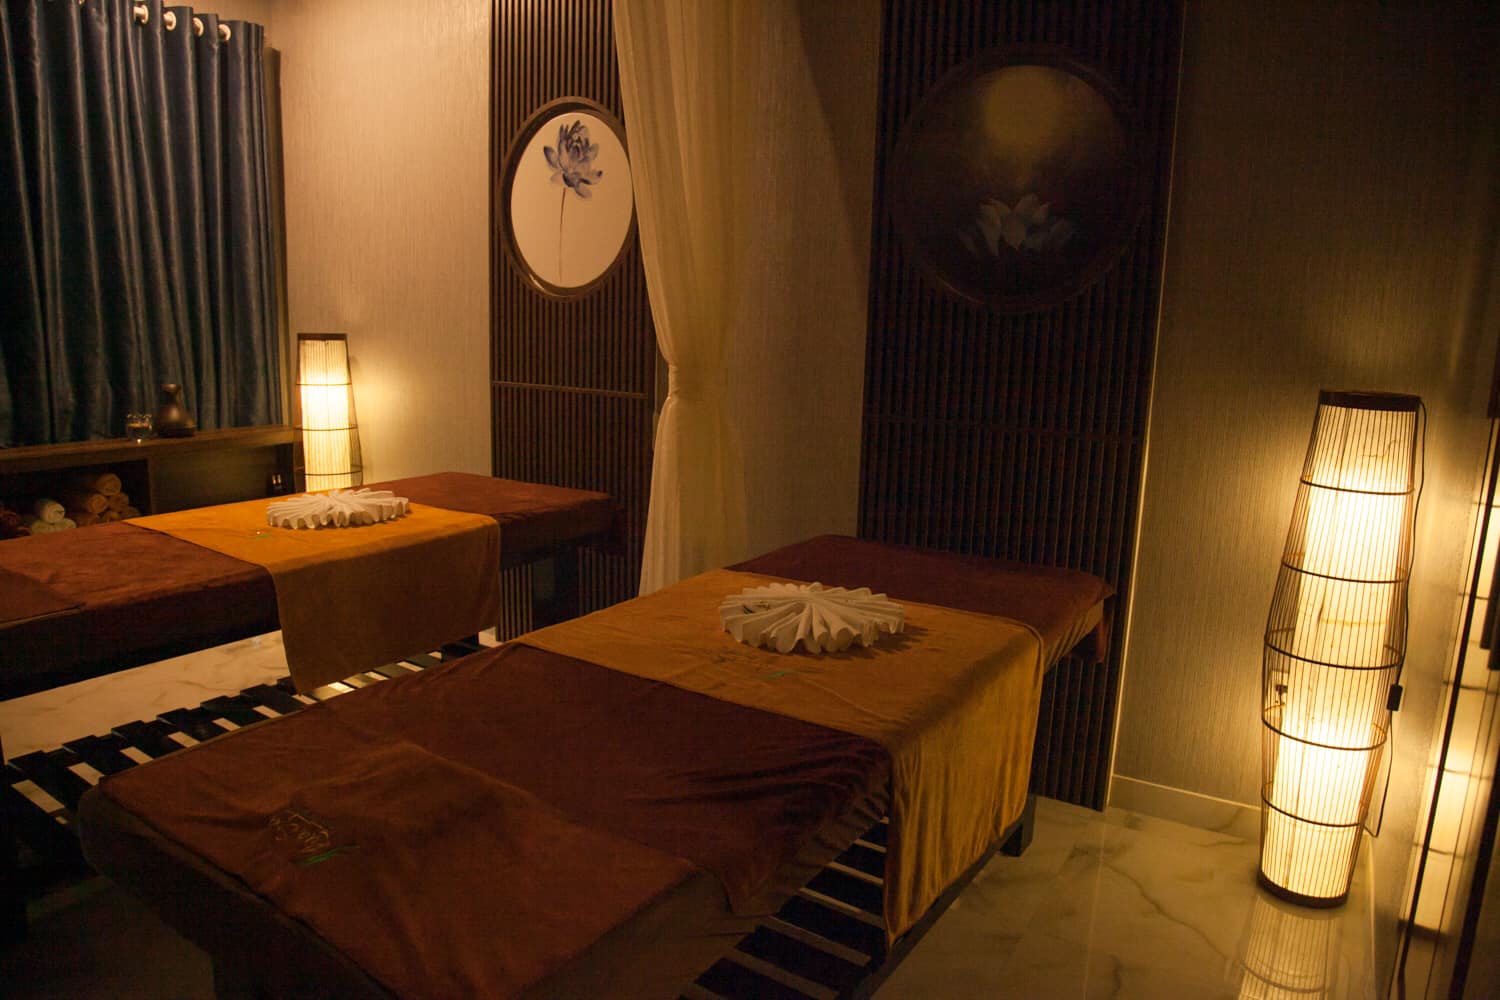 Chia sẻ kinh nghiệm đi Spa Massage. Bao lâu nên đi massage một lần?